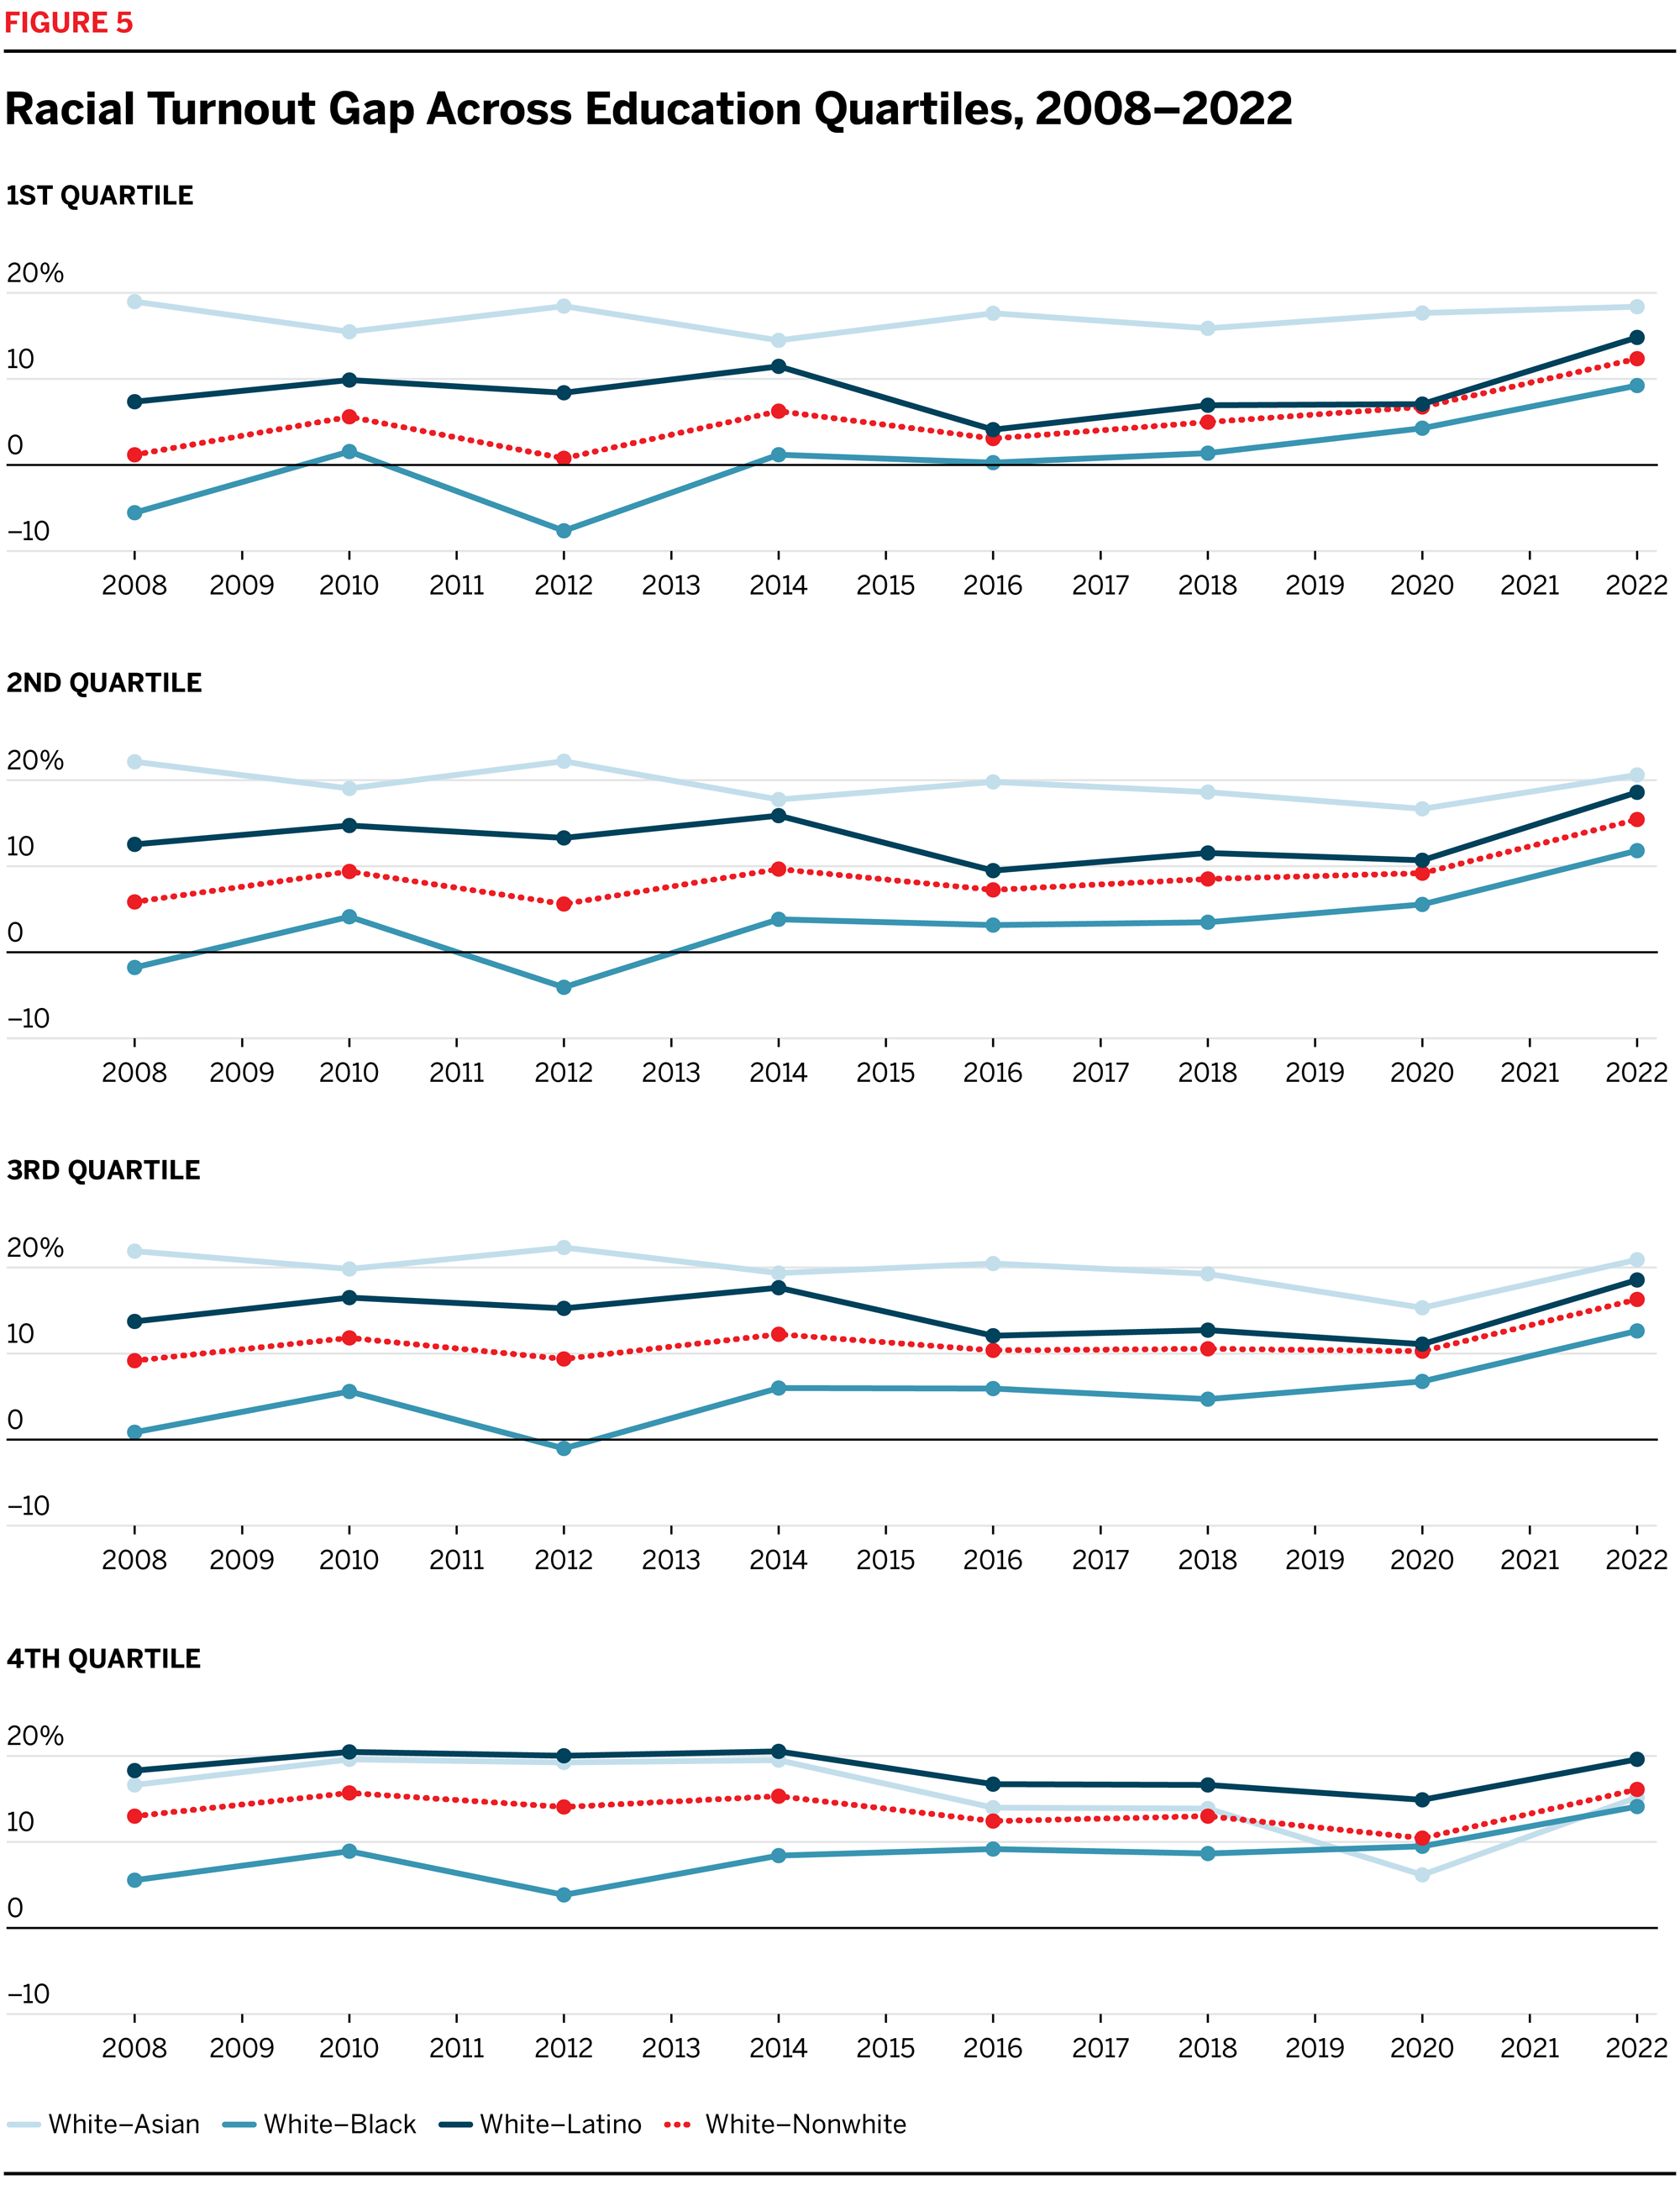 Racial Turnout Gap Across Education Quartiles, 2008-2022 line chart